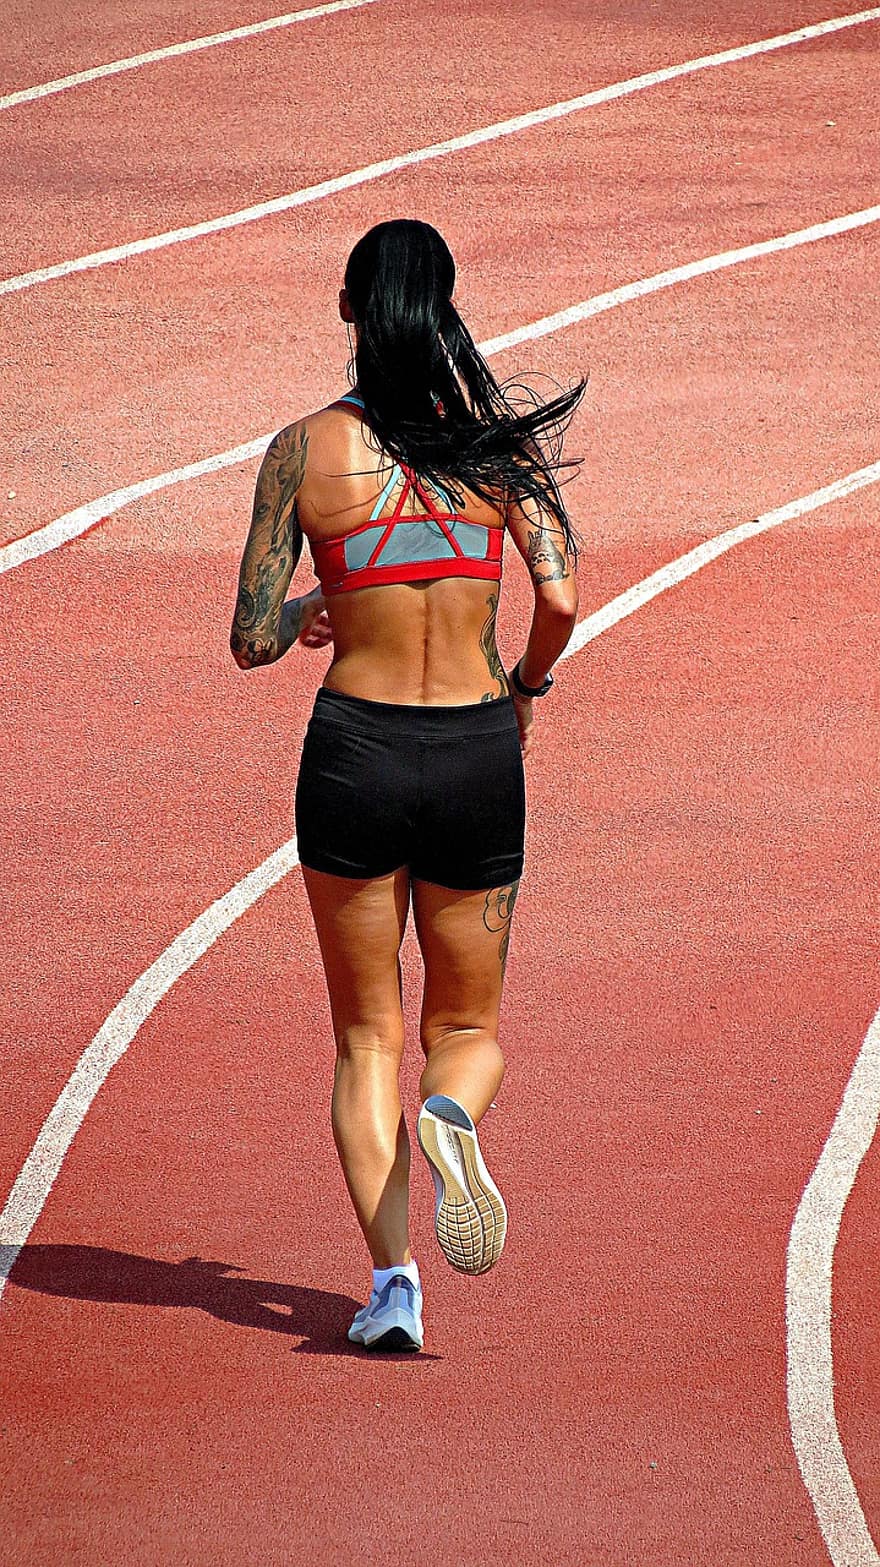 biegać, zdatność, bieżnia, kobieta, Sport, wellness, ćwiczenie, trening, bieganie, jogging, sport